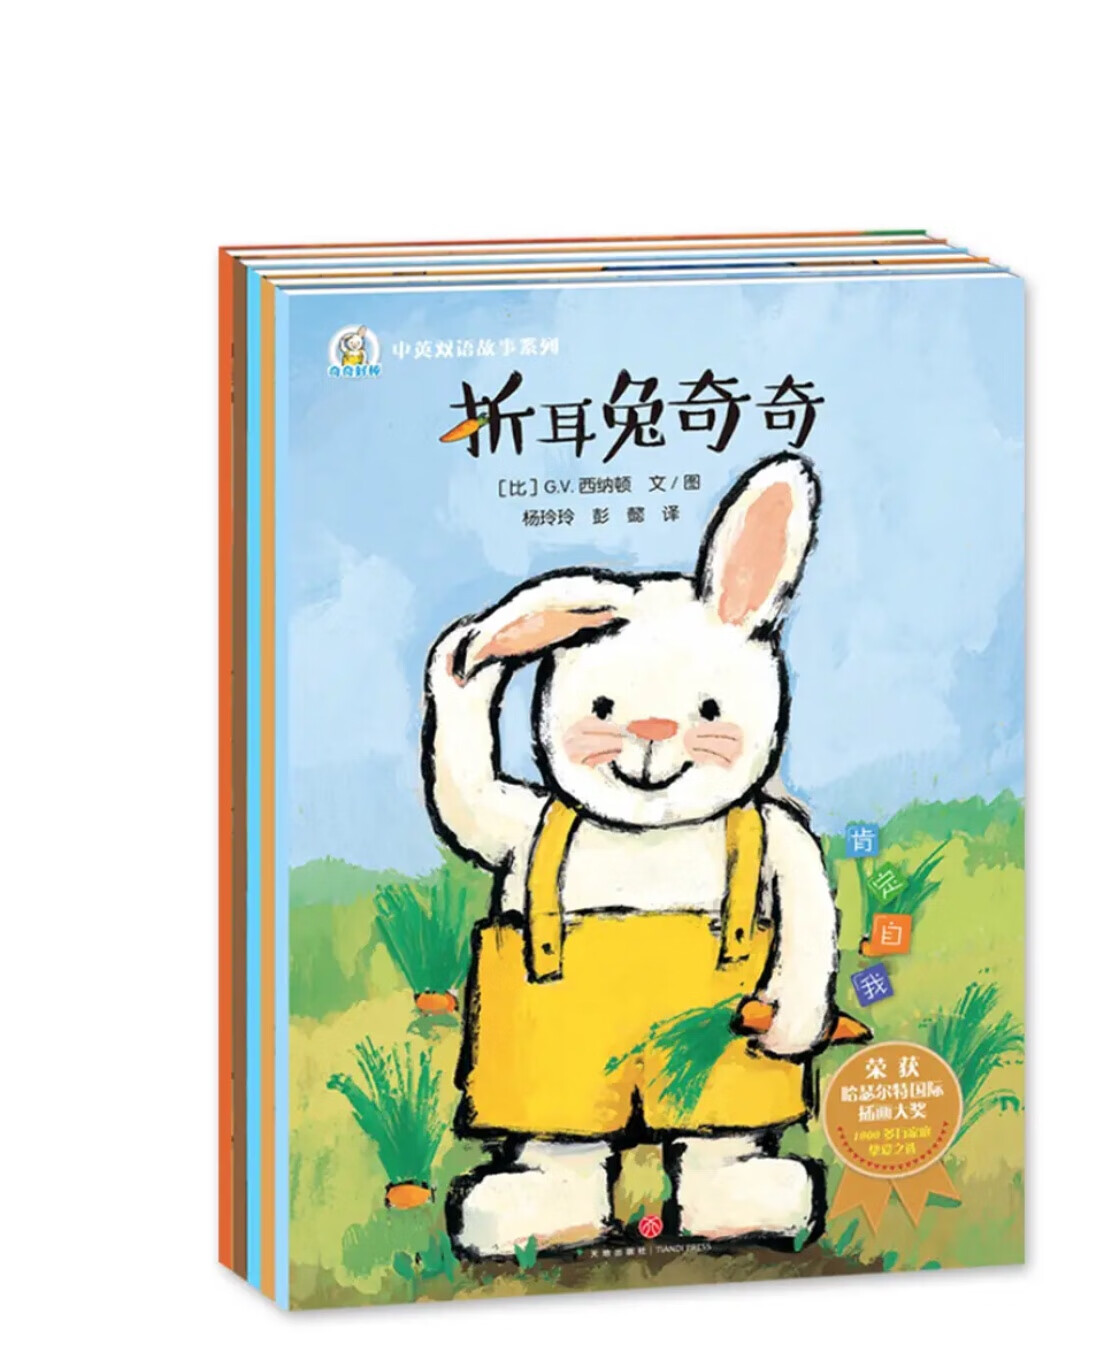 这套书看着就很呆萌，小兔子动物卡通形象绝对是娃娃最喜欢的，而且内容也就孩子日常展开，非常不错哦/